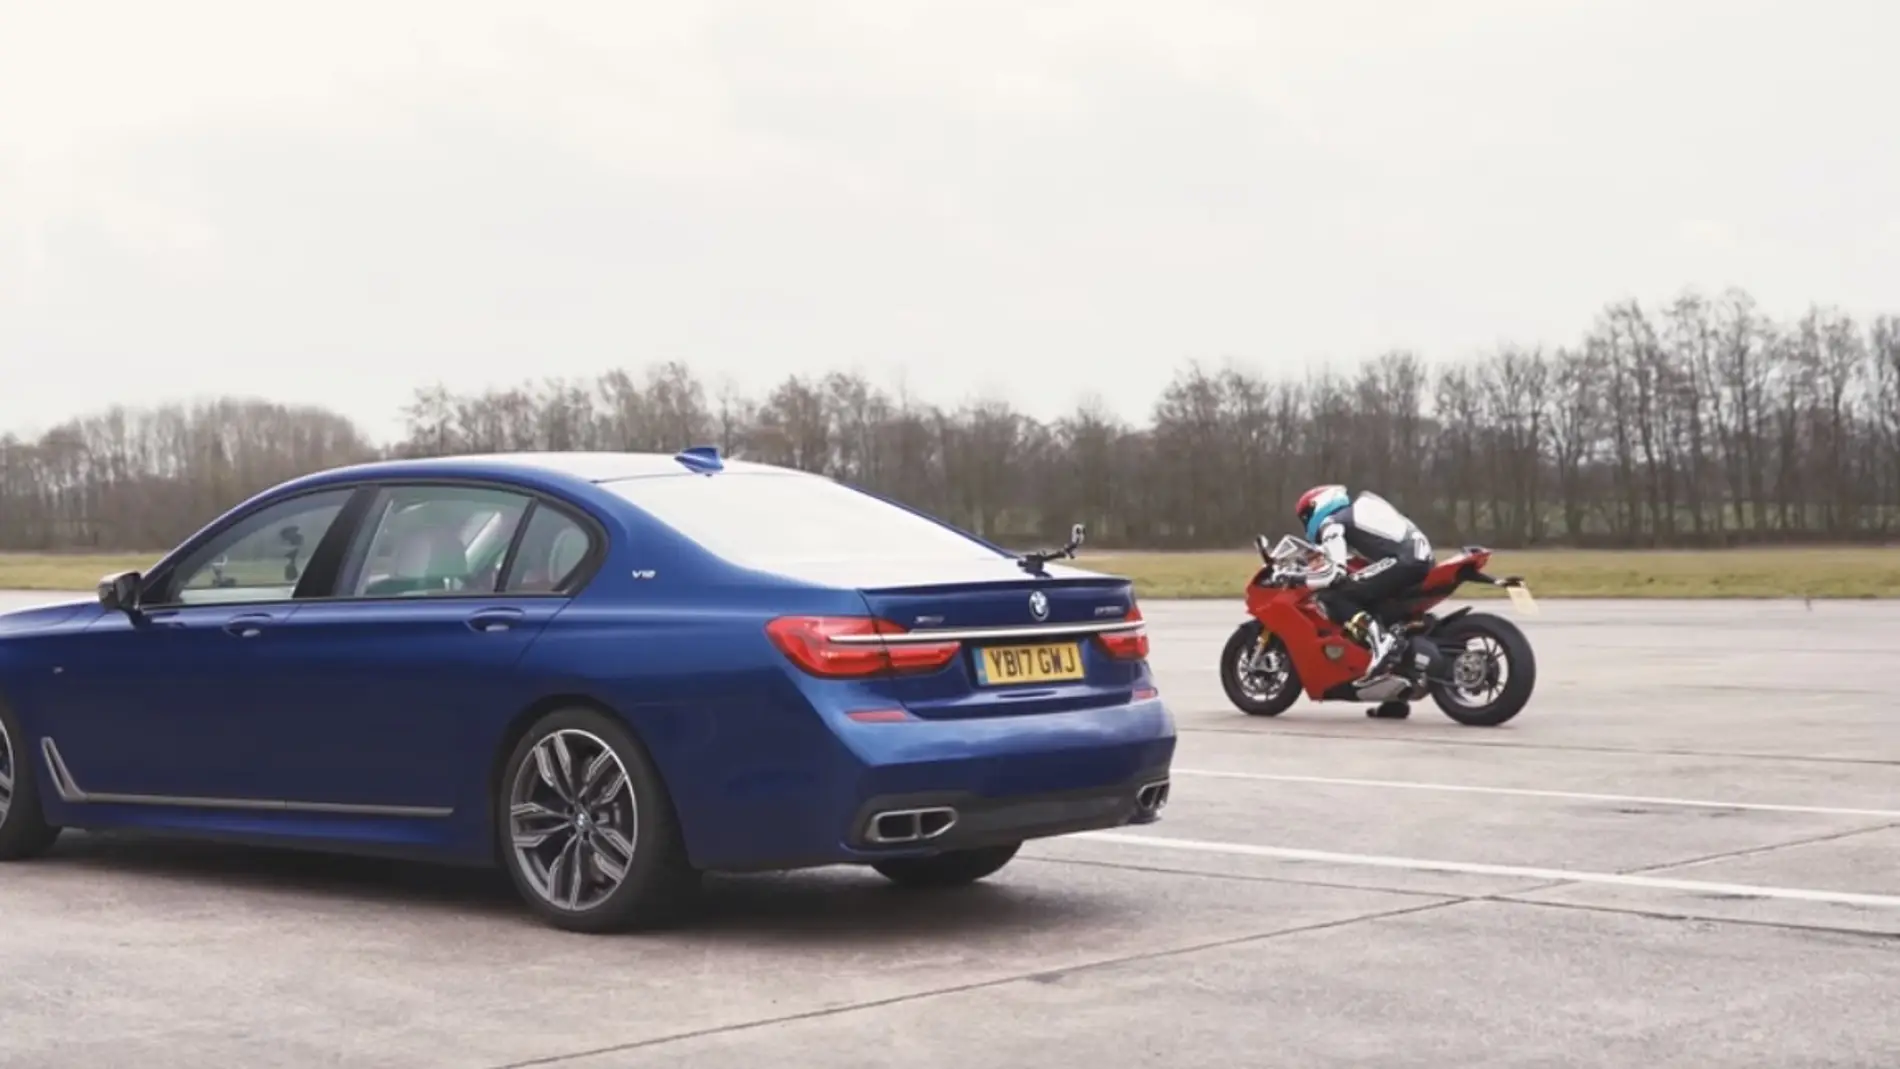 ¿Qué acelera más rápido, el BMW más potente del mercado o una Ducati con 214 CV?